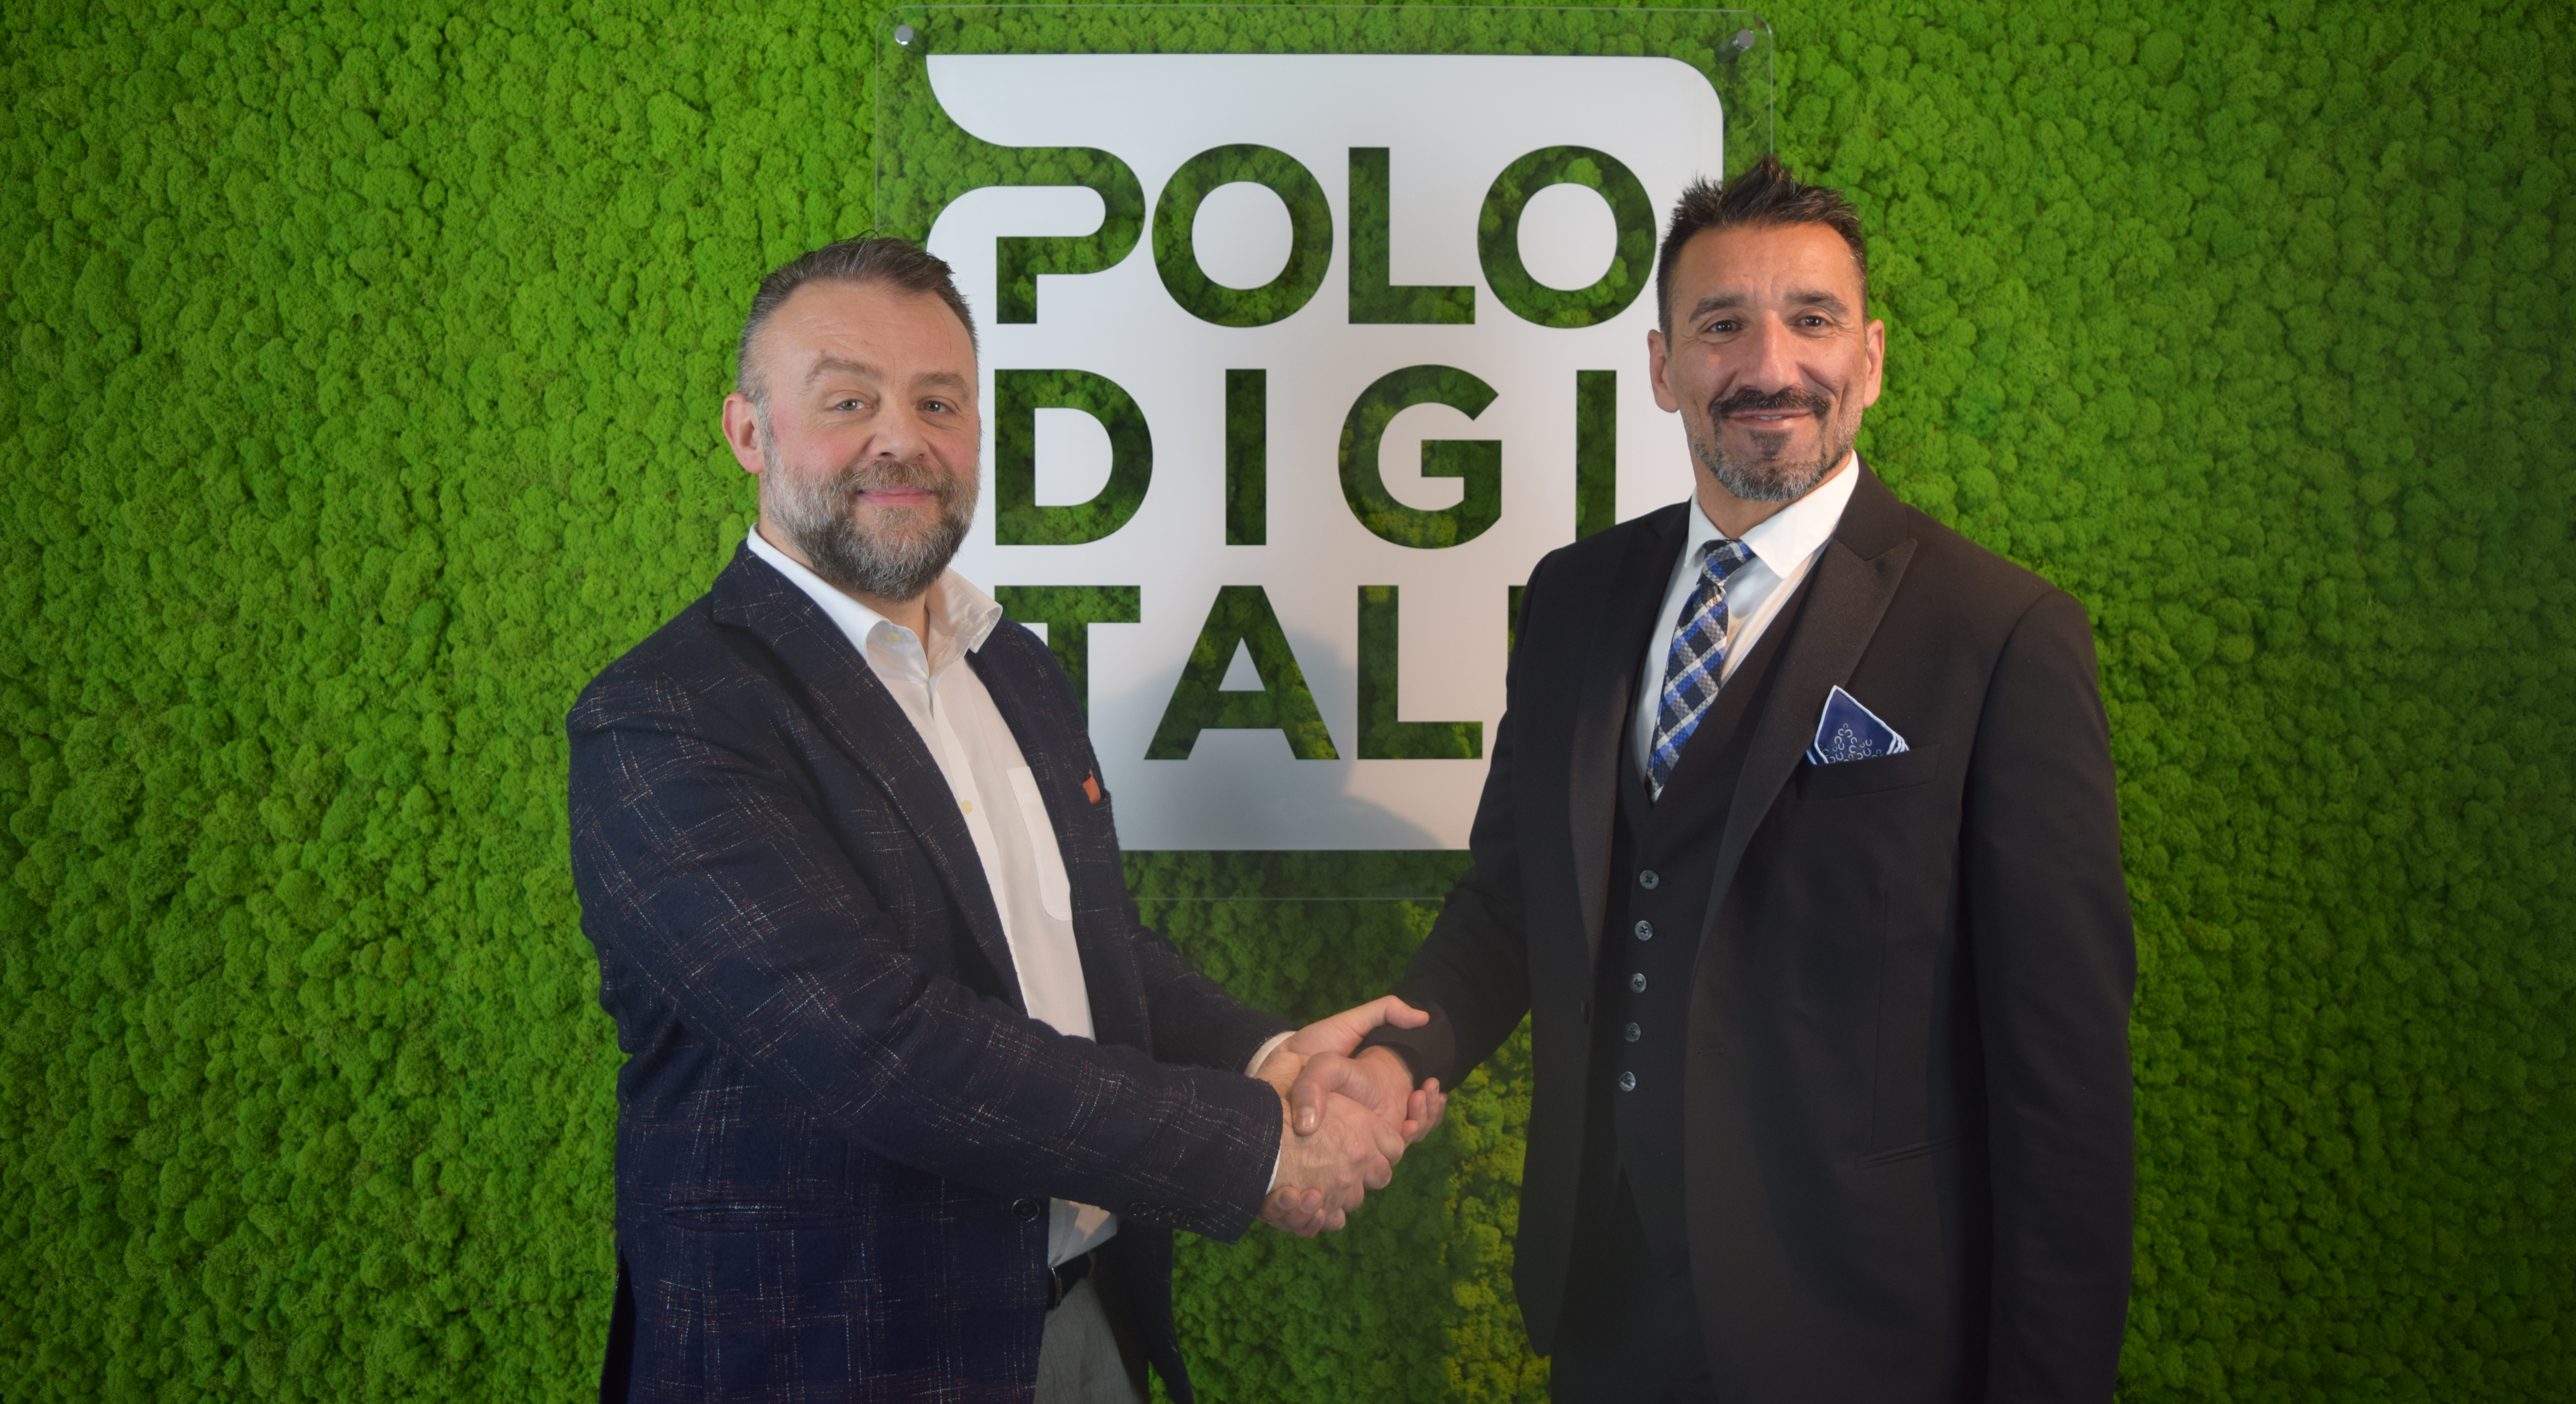 Polo Digitale amplia i suoi orizzonti con l’operazione “Polo Firenze”